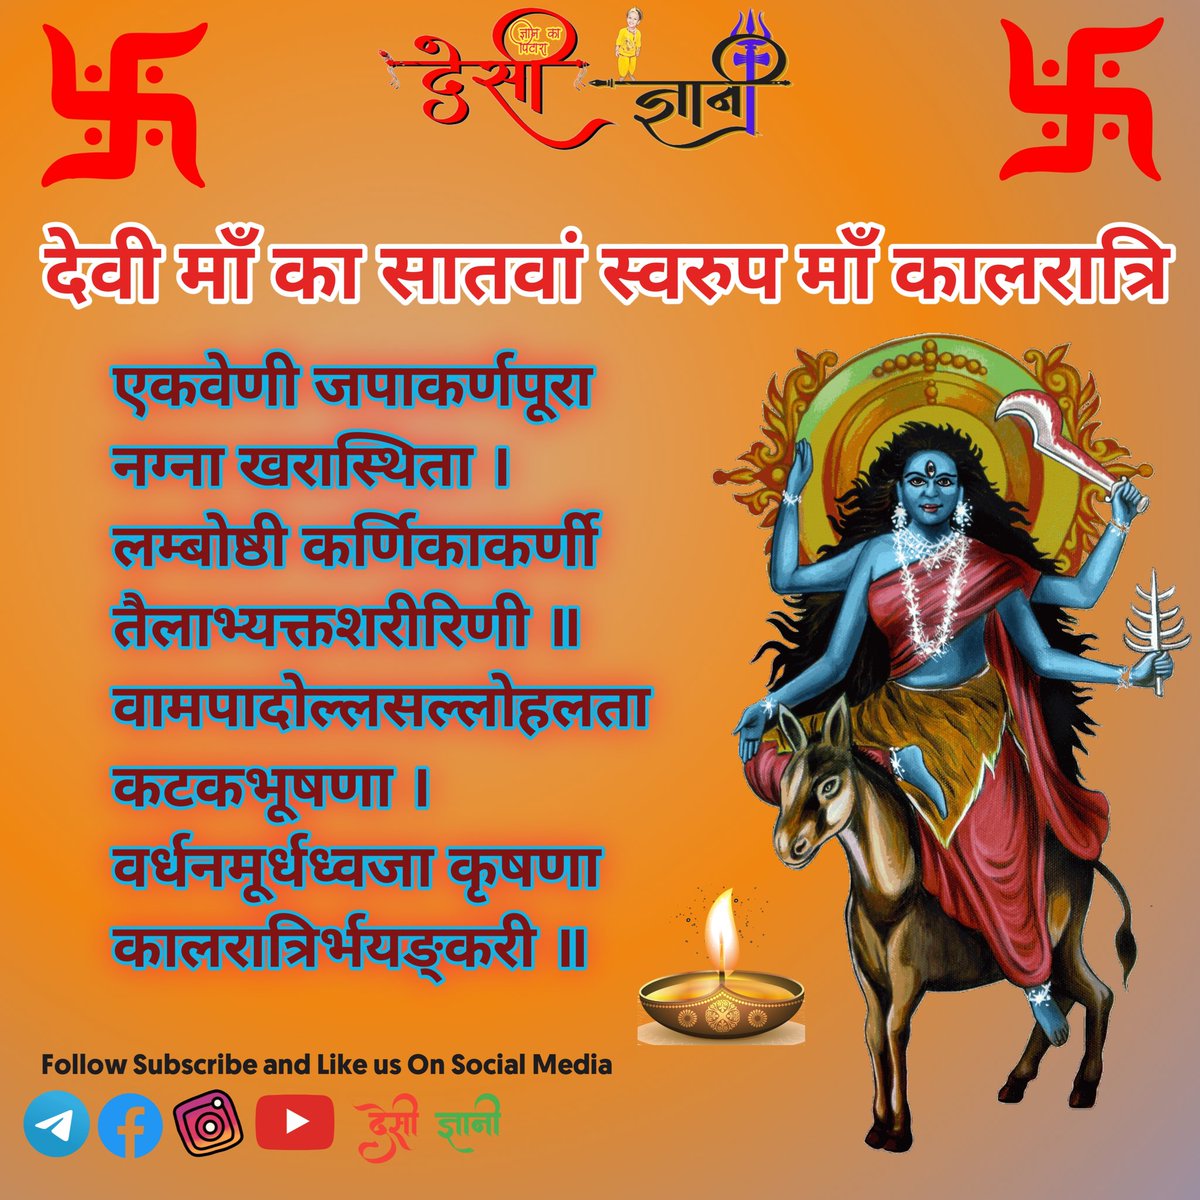 चैत्र नवरात्रि के सातवें दिन मां कालरात्रि की पूजा की जाति है। मां की पूजा करने से व्यक्ति को उसके हर पाप से मुक्ति मिल जाती है, साथ ही शत्रुओं का भी नाश हो जाता है।

#kaalratrimaa  #navratri #chaitranavratri #hindufestival #9dayspooja  #kaalratri #desigyani  #GoodMorning